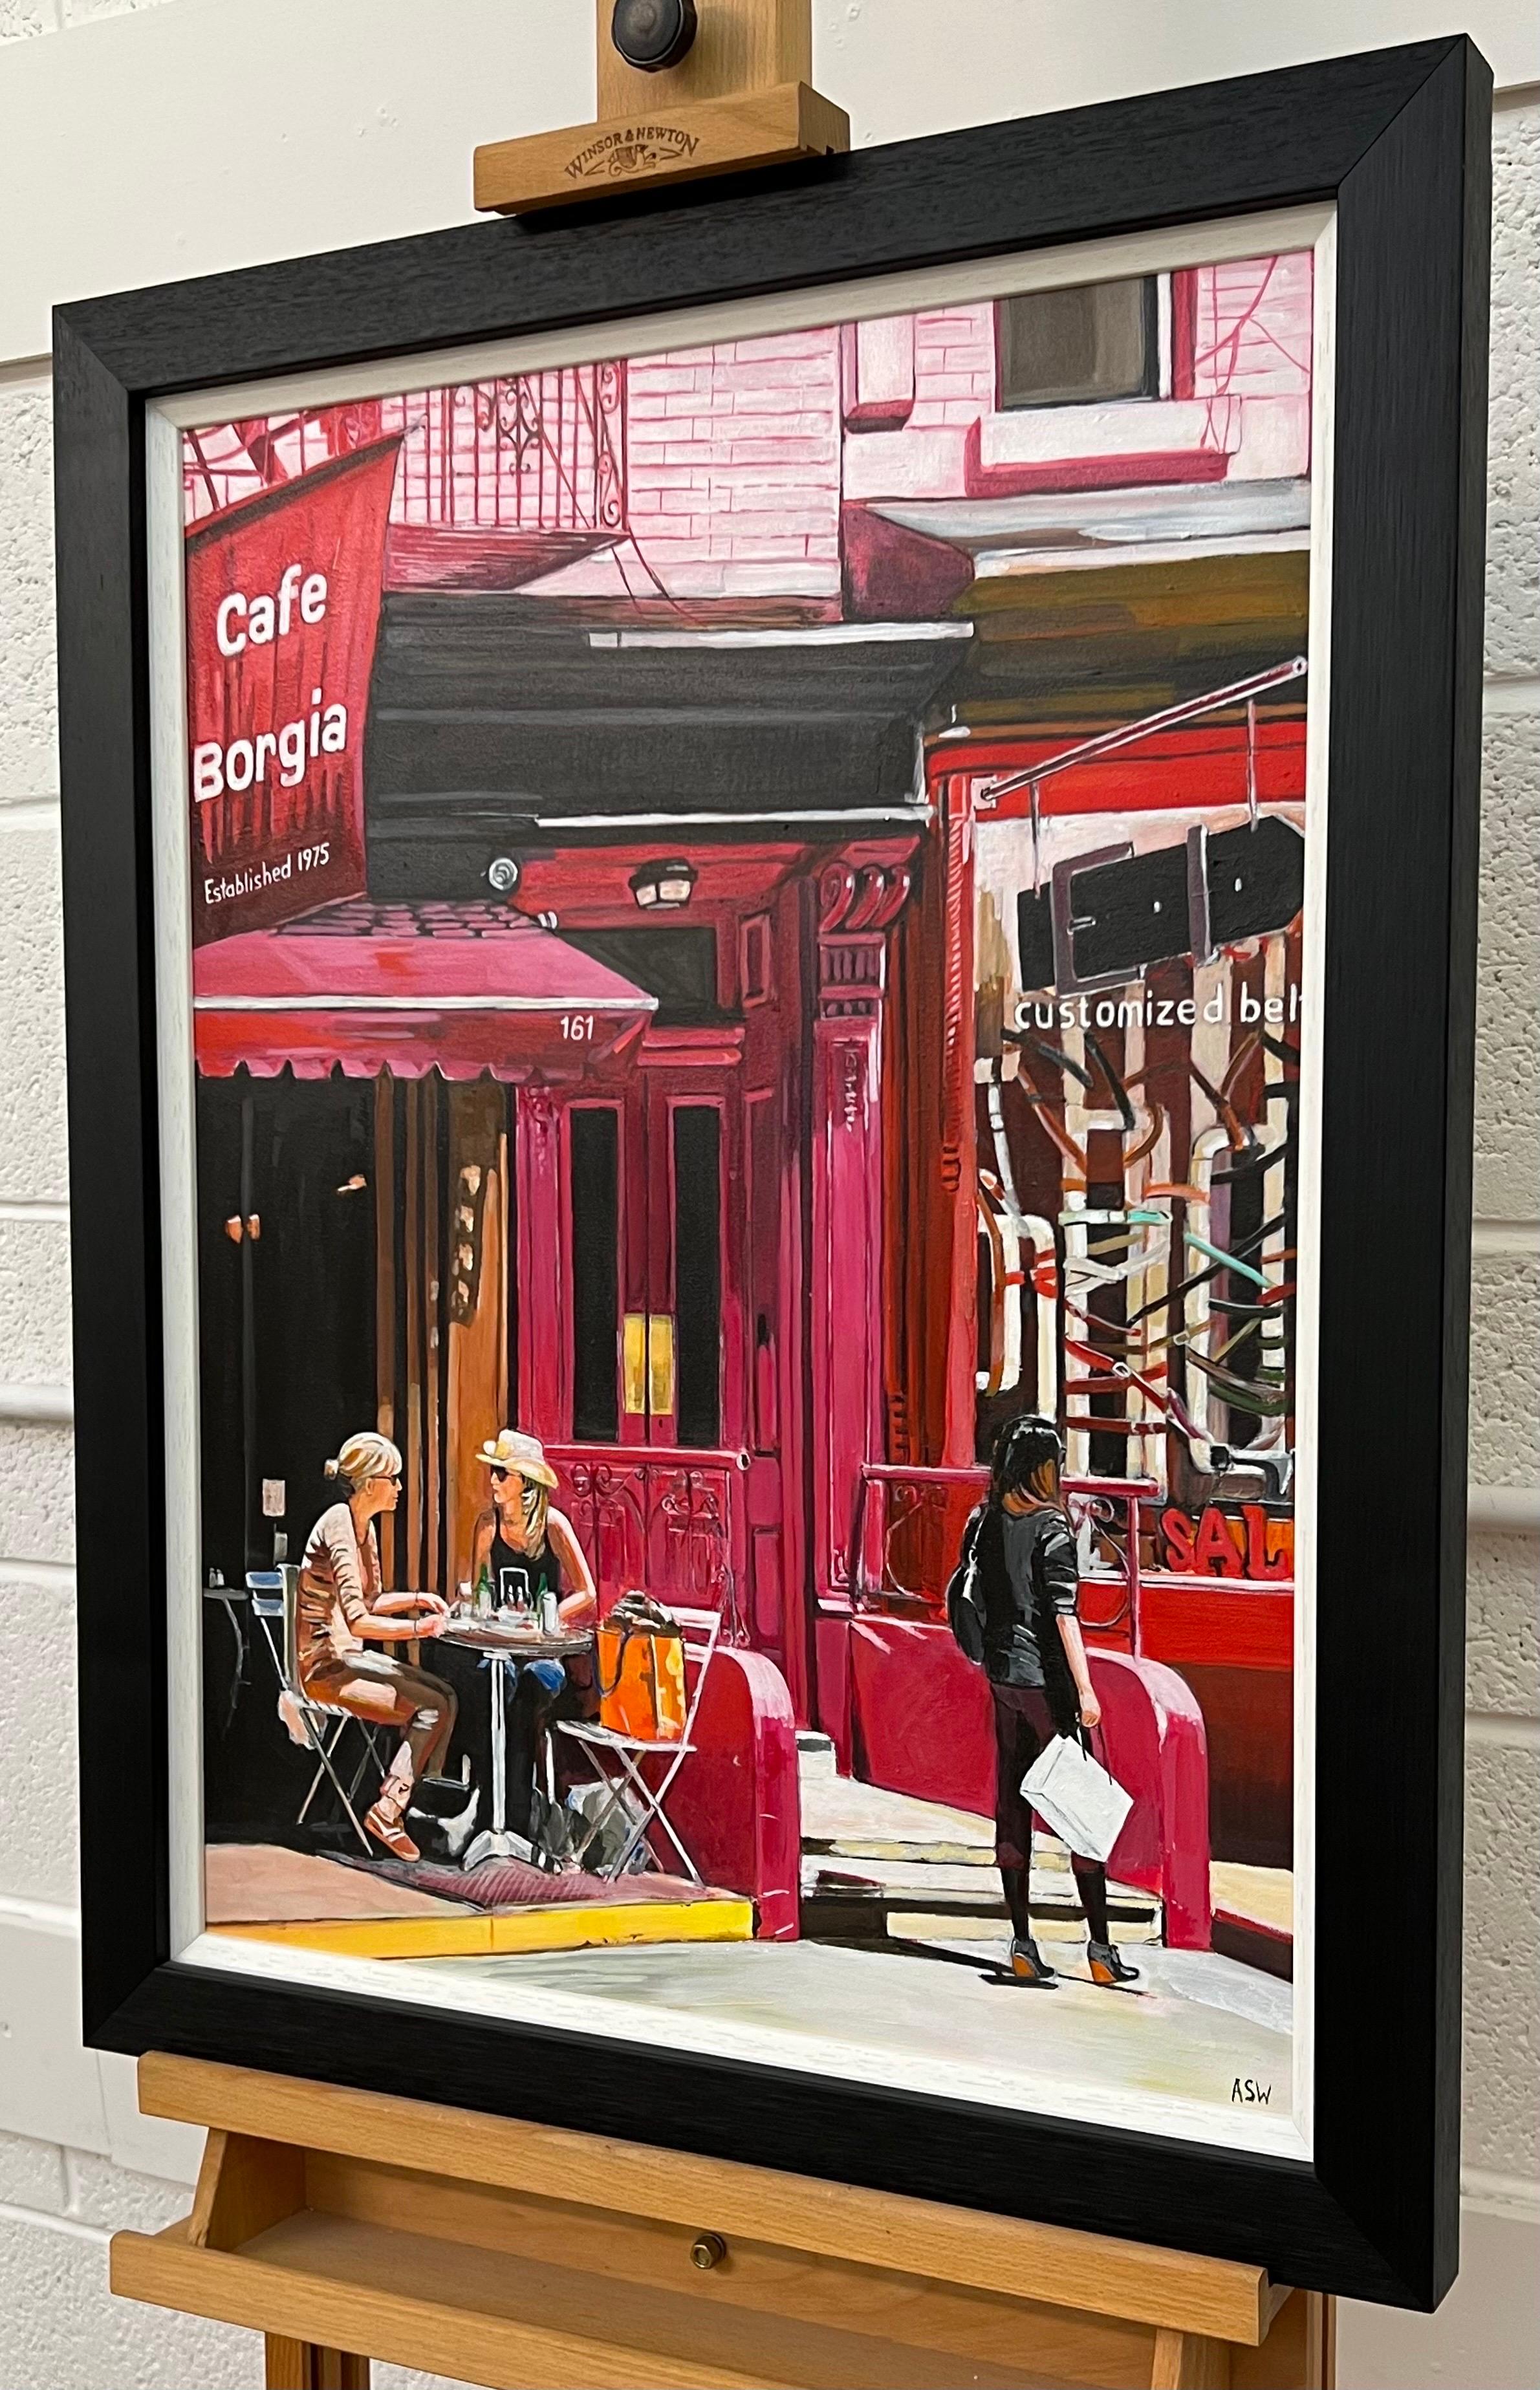 Café Borgia de New York avec des figures féminines de l'artiste britannique contemporaine Angela Wakefield. Il s'agit d'une œuvre majeure de sa série New York.

L'œuvre d'art mesure 18 x 24 pouces 
Le cadre mesure 23 x 29 pouces 

Le travail de